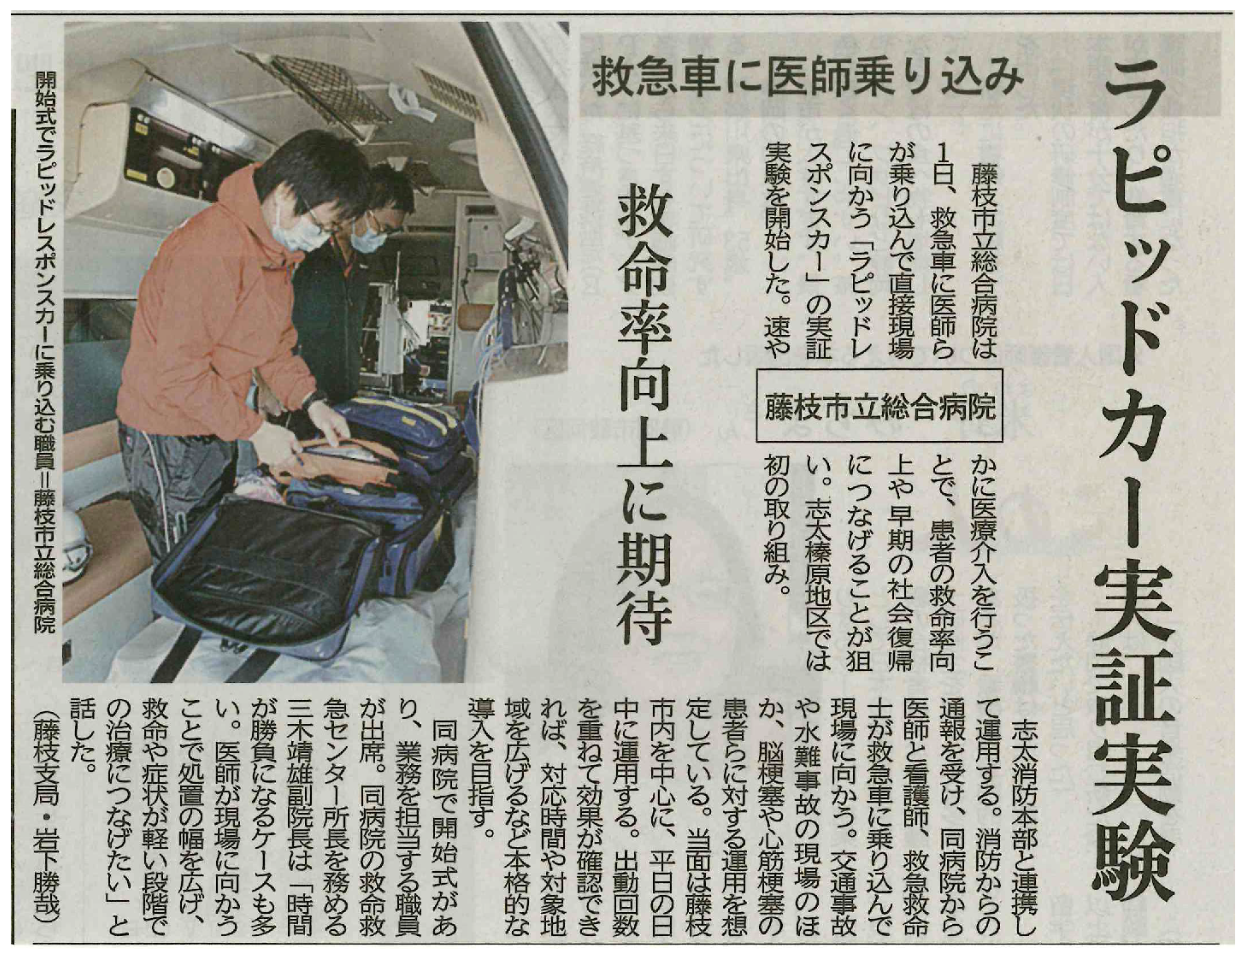 令和3年11月2日静岡新聞朝刊に掲載された記事